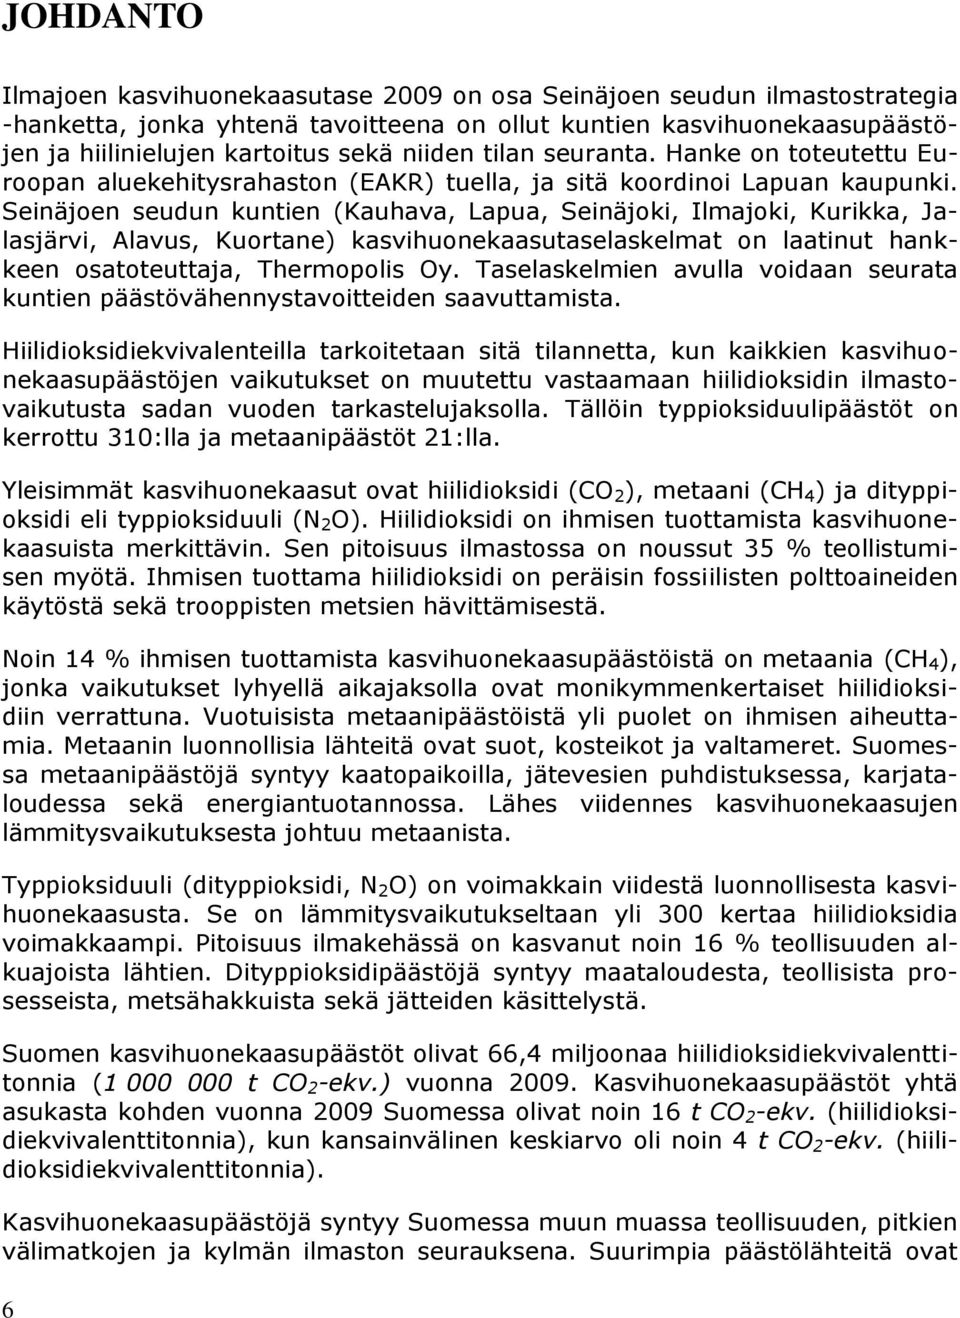 Seinäjoen seudun kuntien (Kauhava, Lapua, Seinäjoki, Ilmajoki, Kurikka, Jalasjärvi, Alavus, Kuortane) kasvihuonekaasutaselaskelmat on laatinut hankkeen osatoteuttaja, Thermopolis Oy.